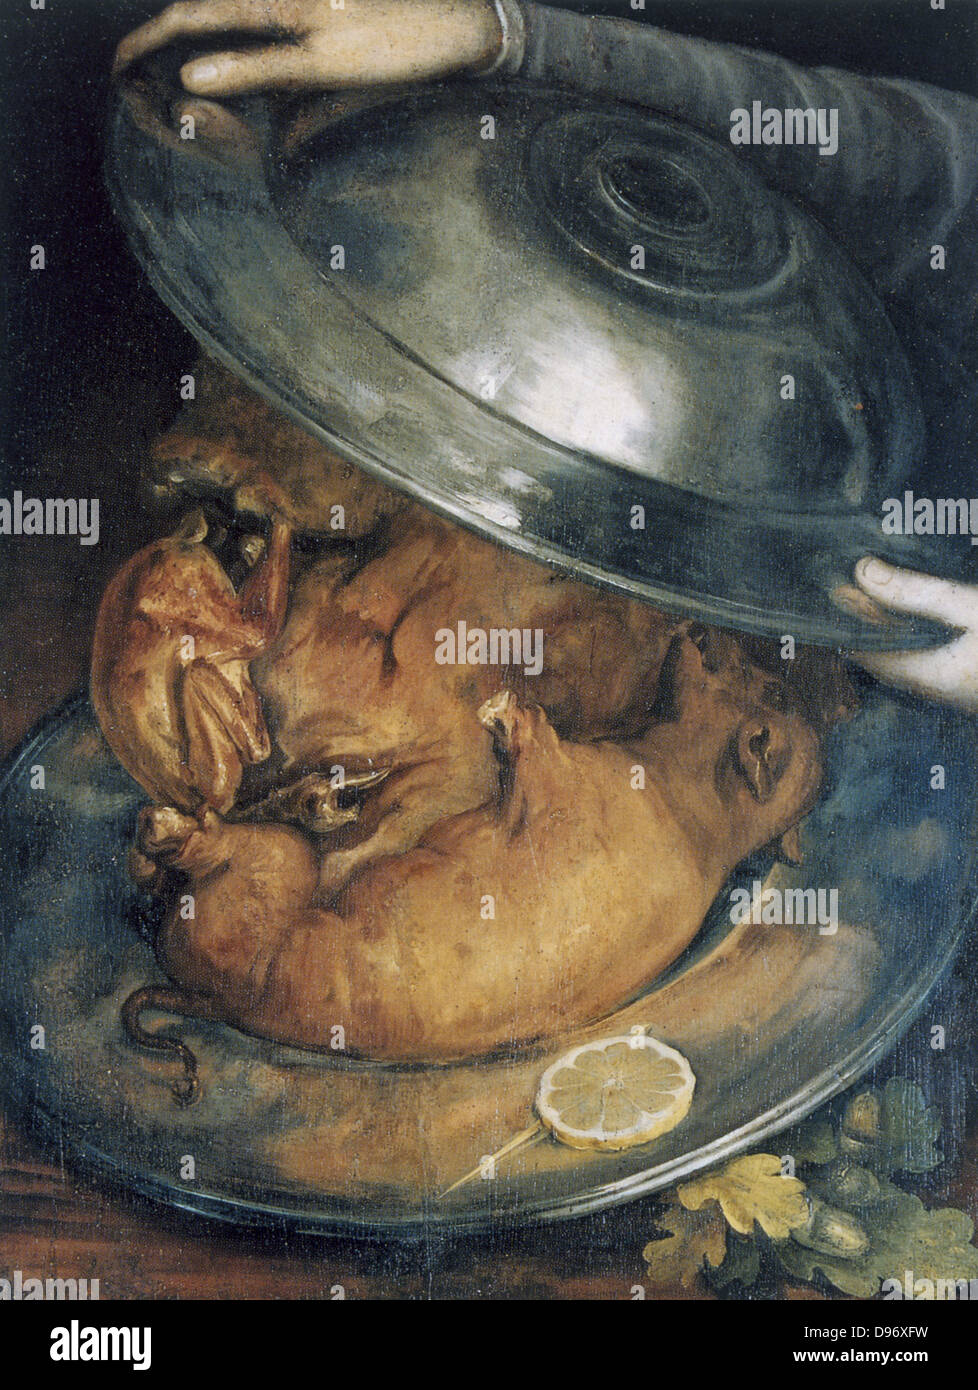 Il Cuoco', still life c1570. Se capovolto il cuoco il ritratto è composto  da due piatti e arrosti di aspirare i suini. Guiseppe Arcimboldo (c1530-93)  pittore italiano. Olio su legno Foto stock -